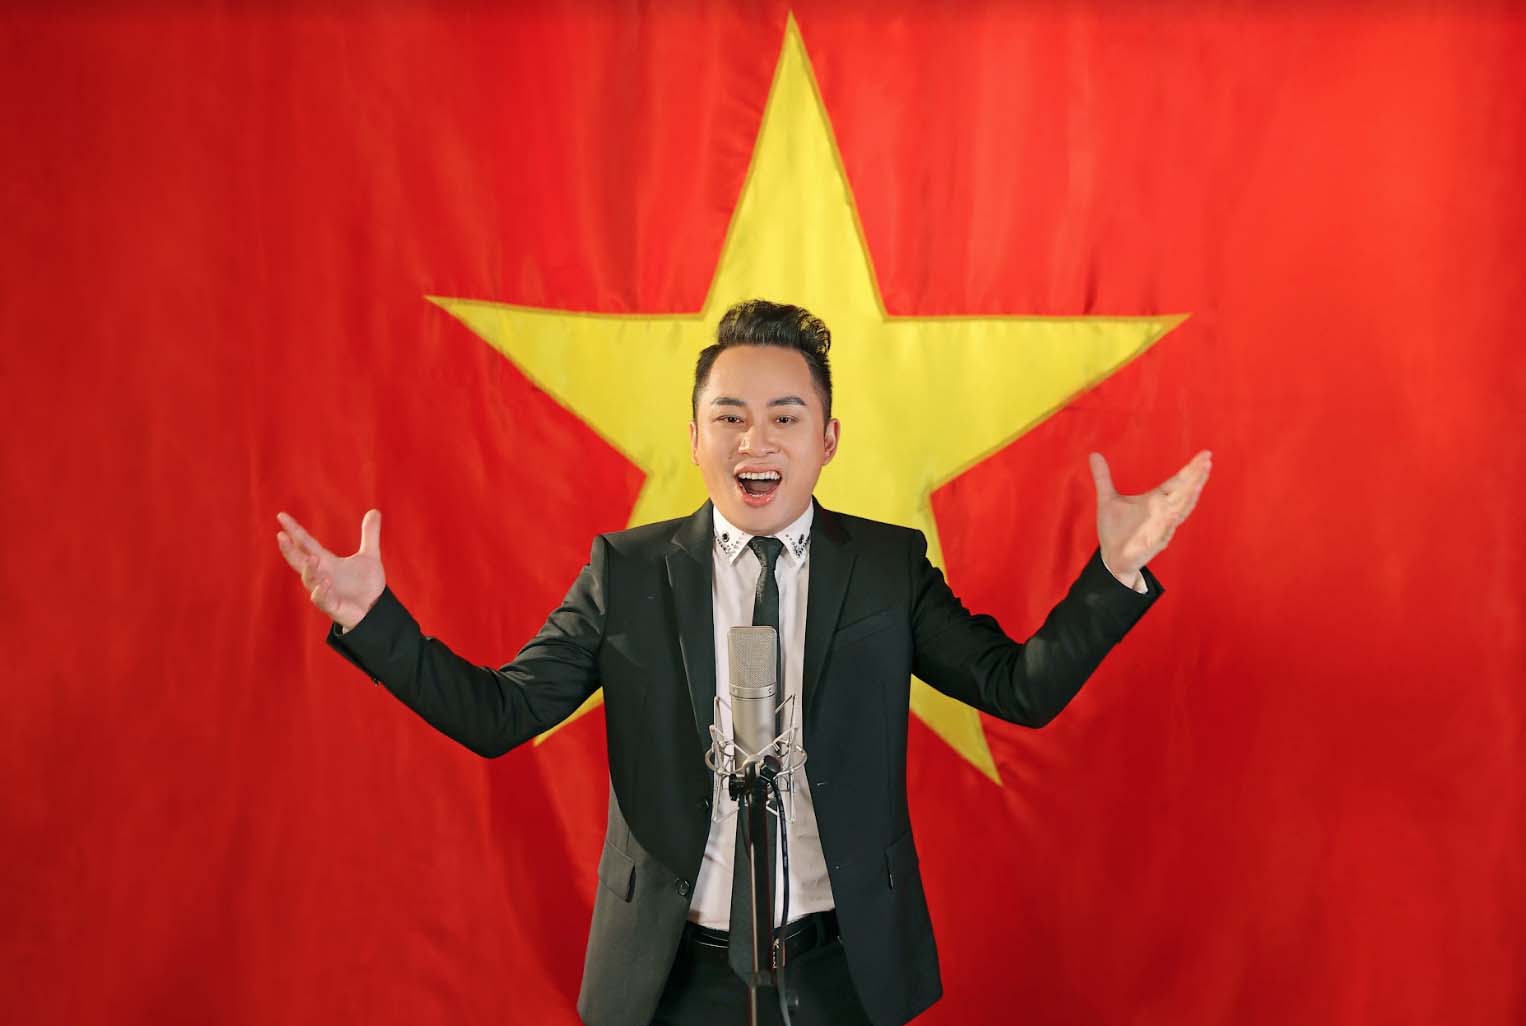 Tùng Dương ra mắt MV Quốc ca đúng ngày giải phóng Thủ đô - Ảnh 1.